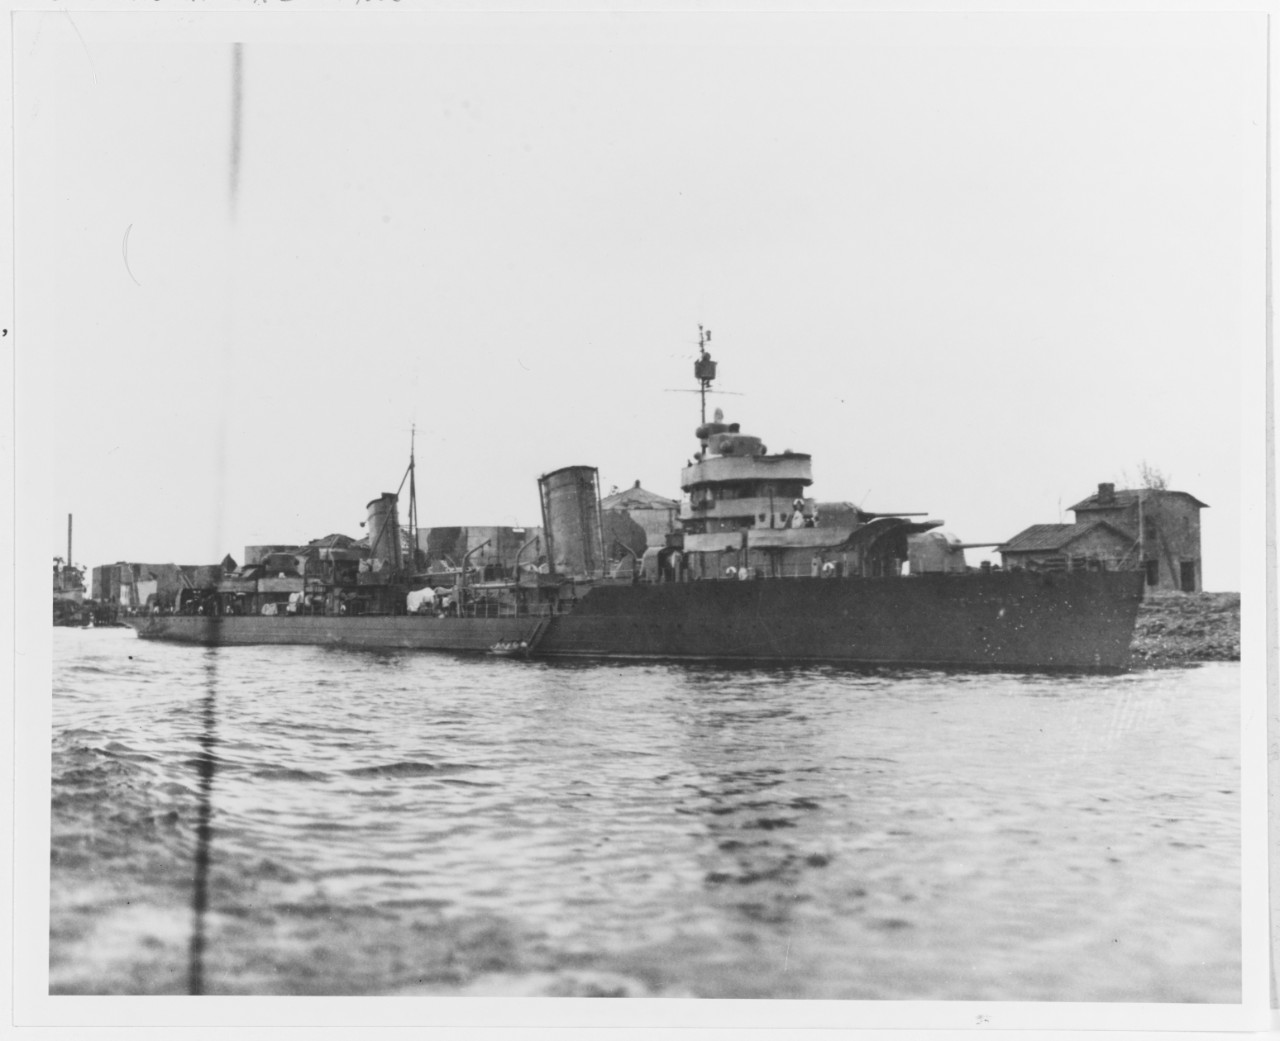 SOVIET LENINGRAD class destroyer